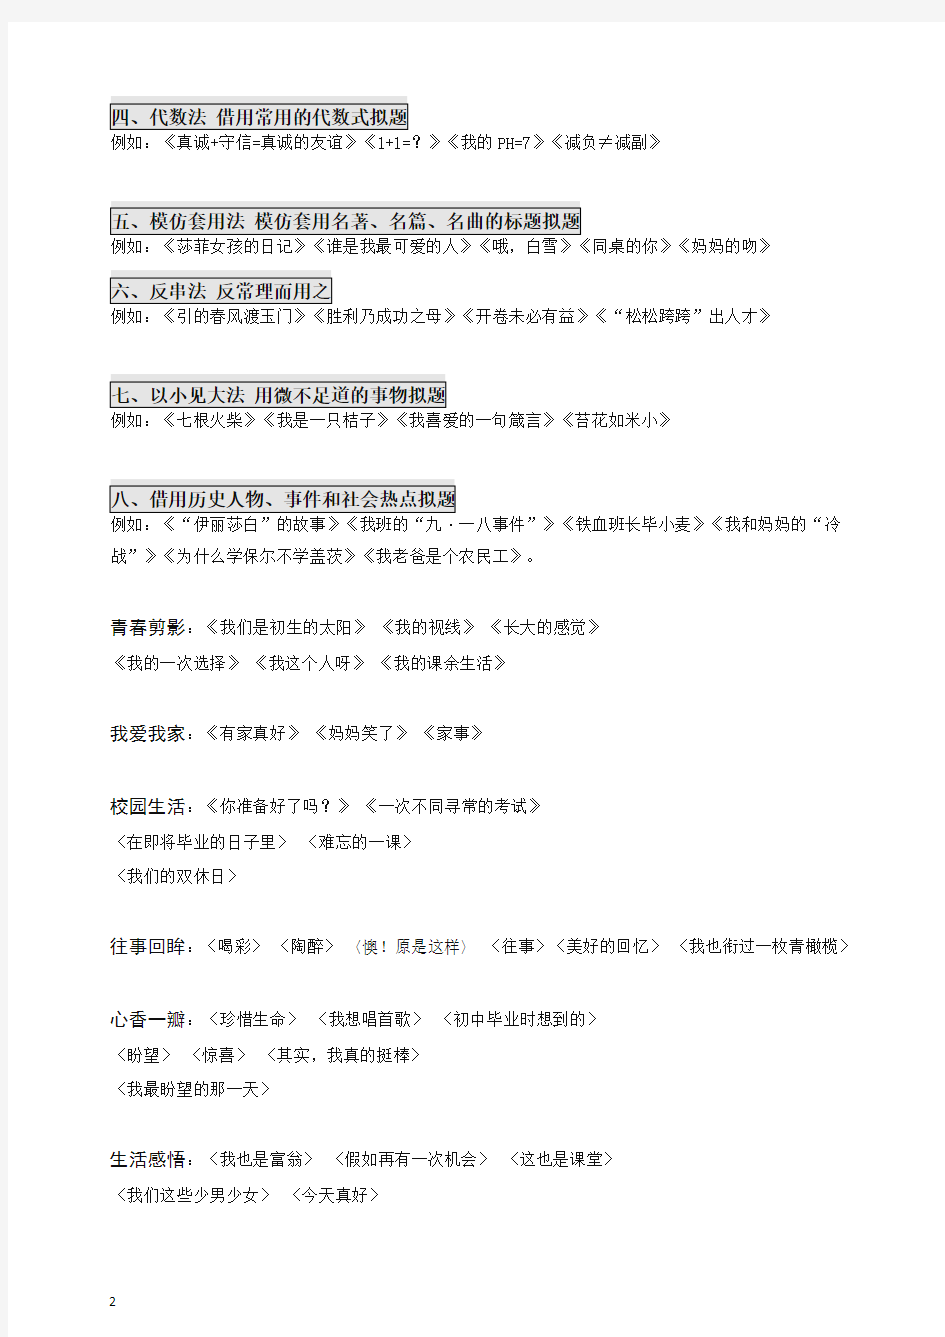 【备考2020】初中语文.作文课程.中考命题篇.半命题作文 拟题.学生版